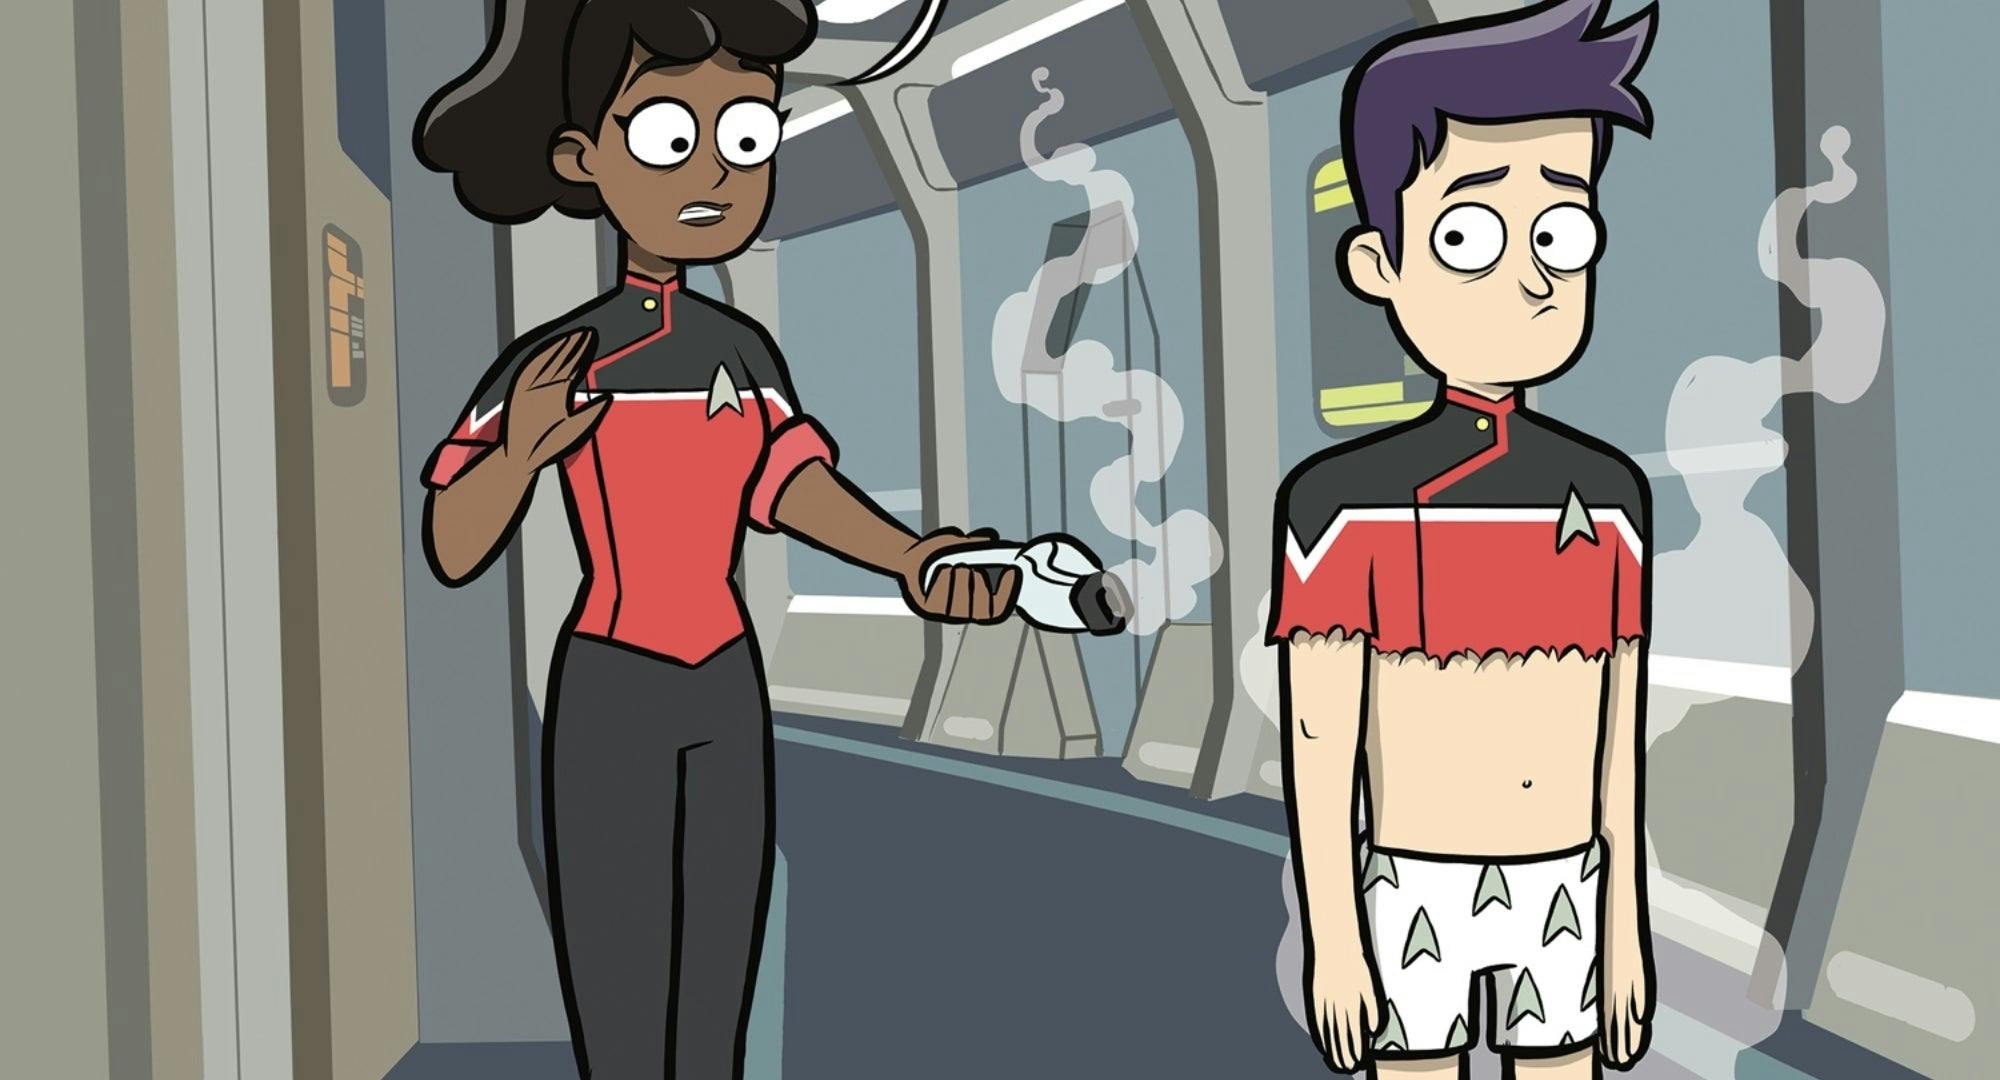 Mariner looks shocked as she accidentally phases away part of Boimler's uniform.